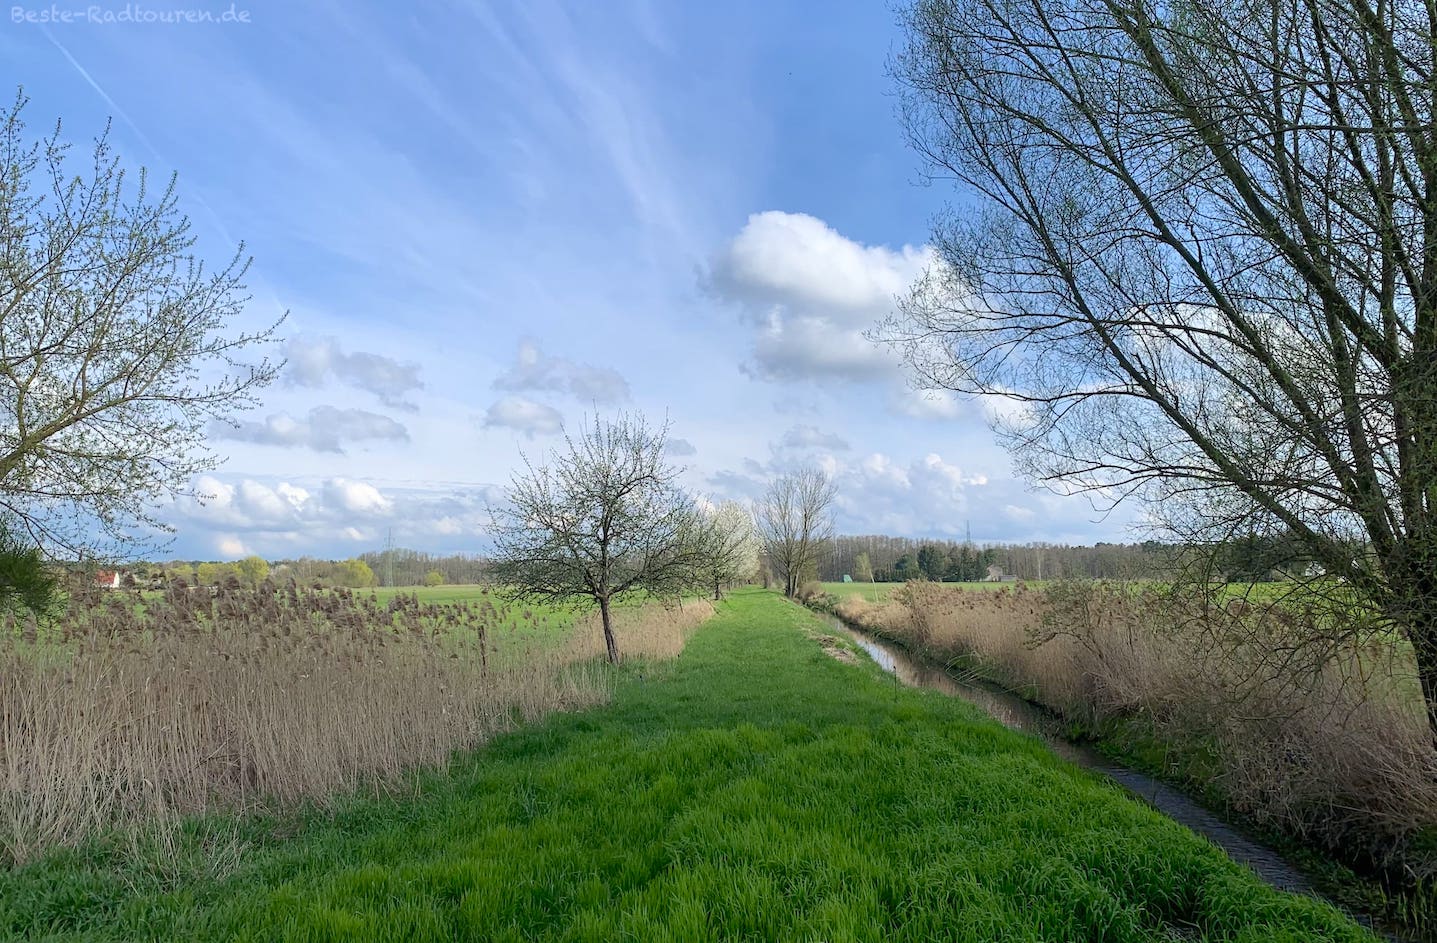 Foto vom Spreeradweg aus: Landschaft bei Neu-Hartmannsdorf (Oder-Spree)